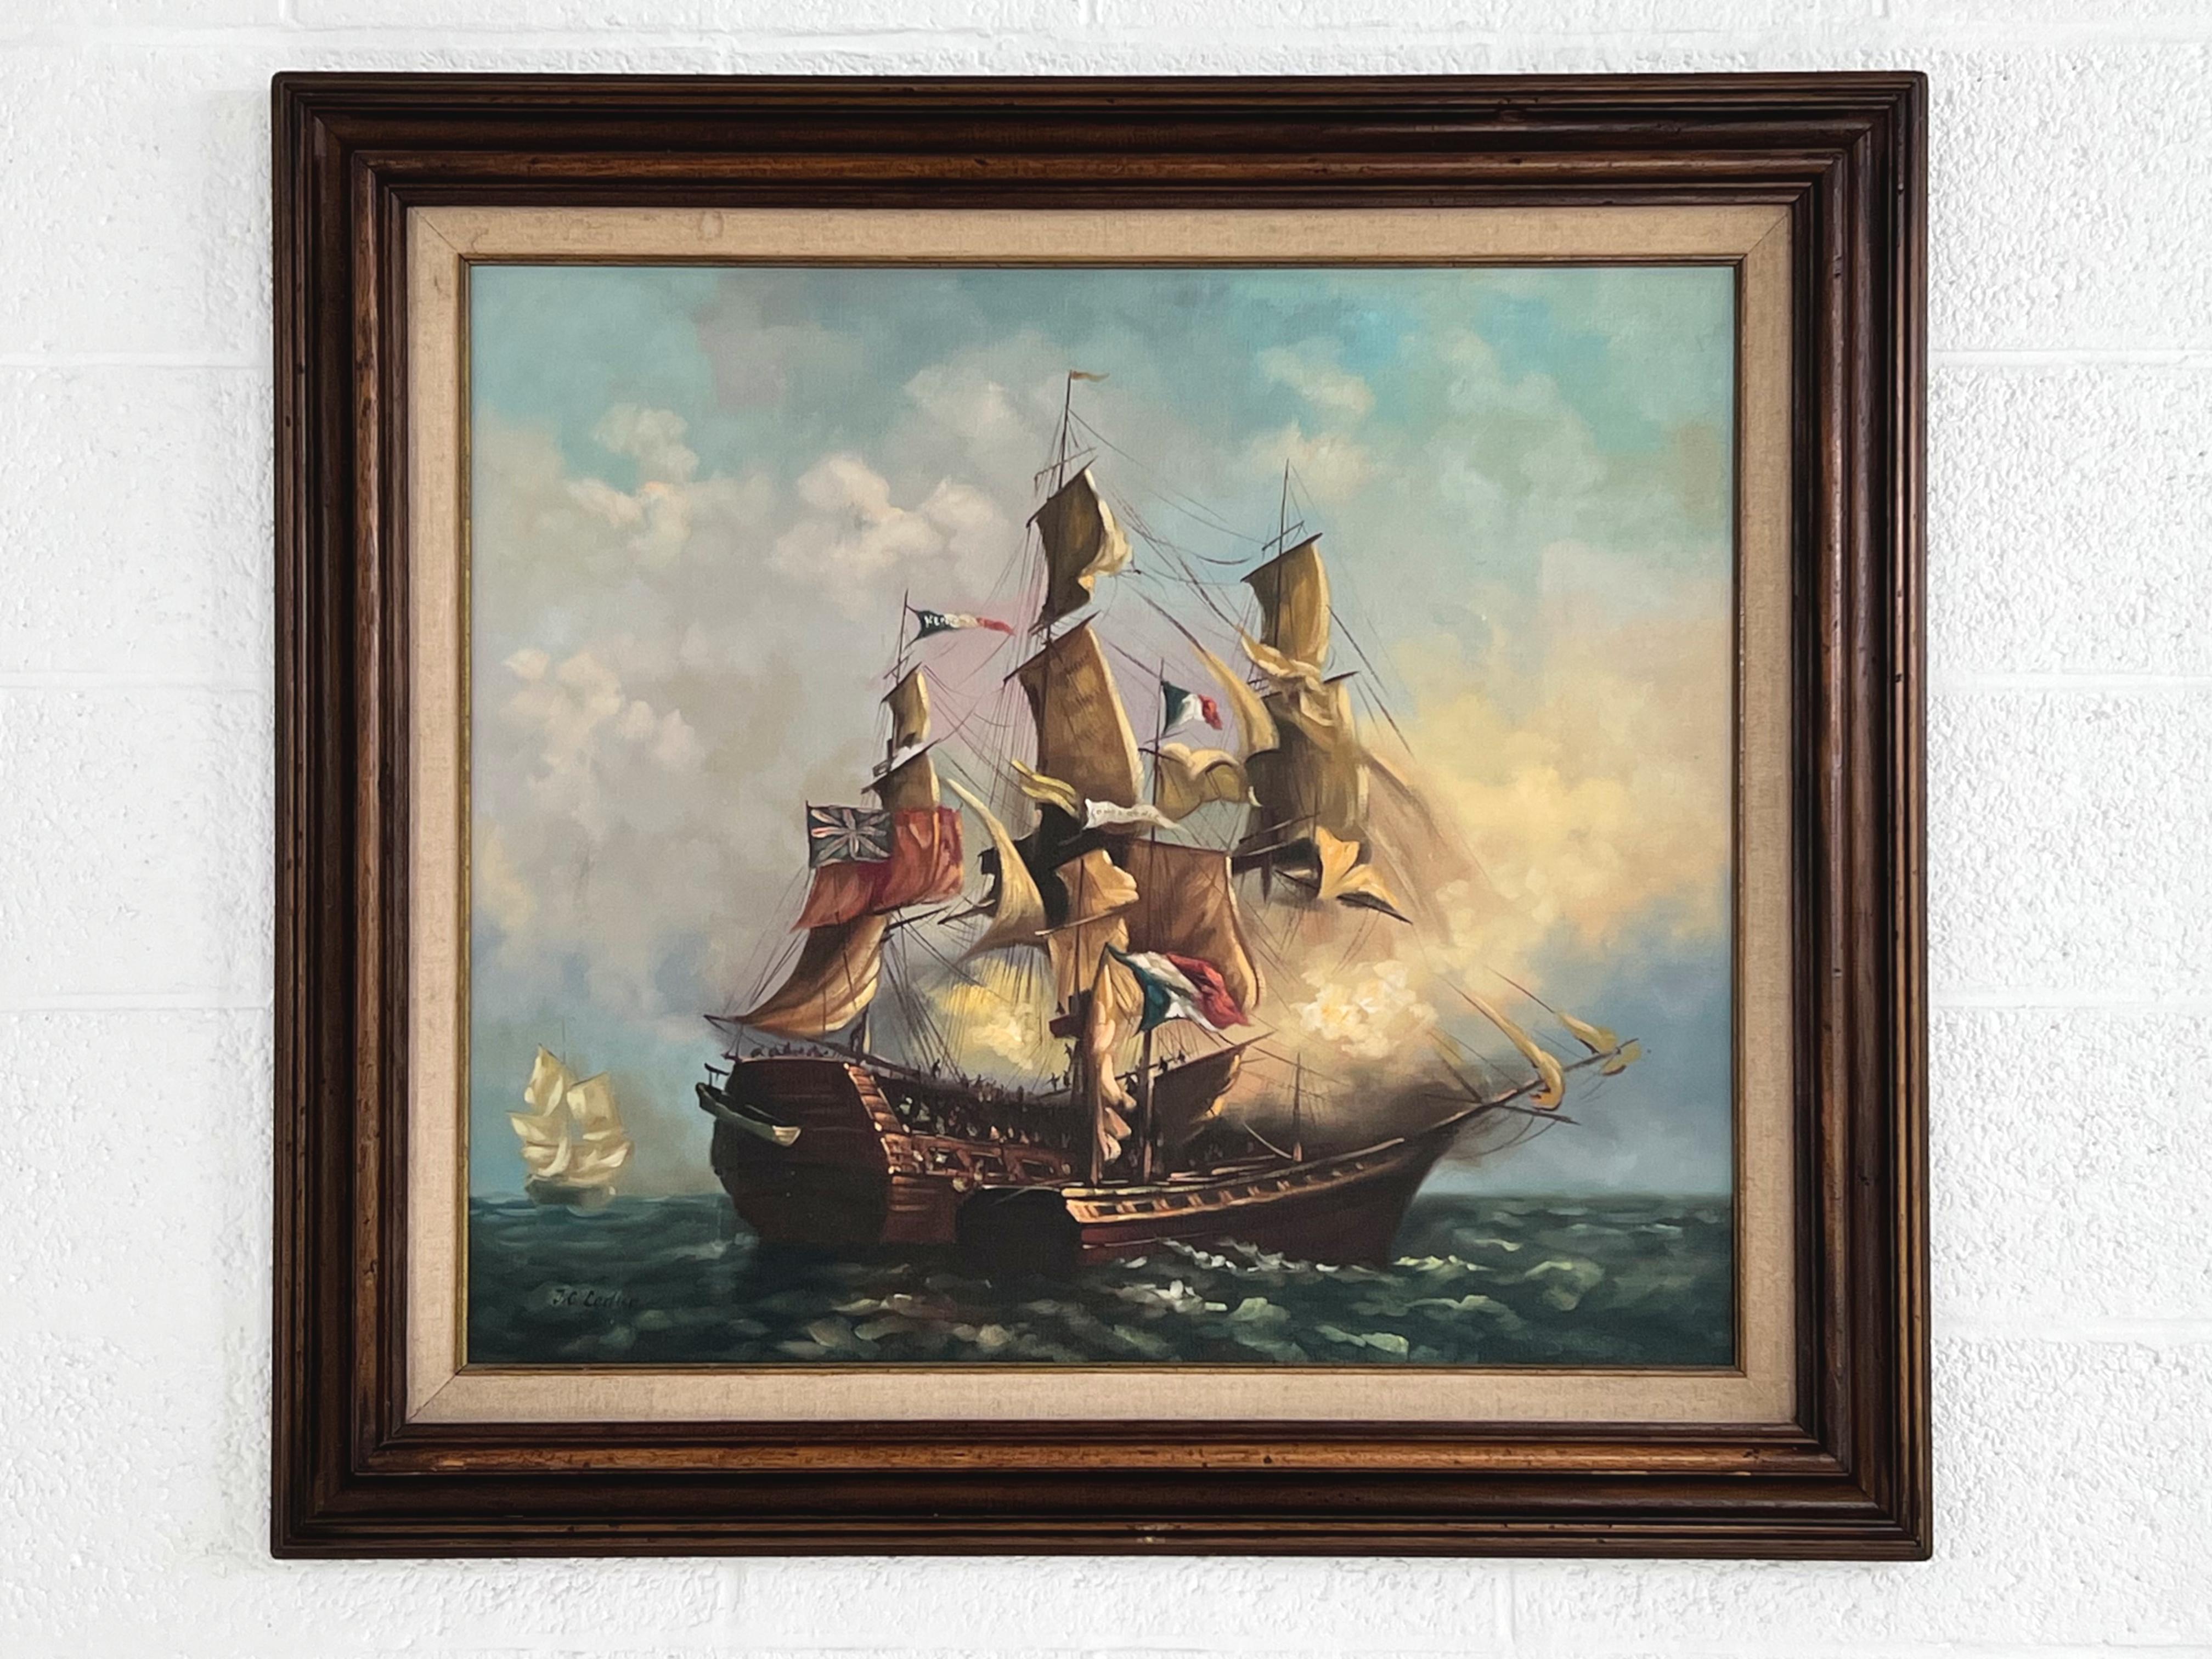 Peinture à l'huile impressionniste Rivière et Nature montrant une bataille navale. Le tout est parfaitement orné d'un cadre en bois magnifiquement sculpté.